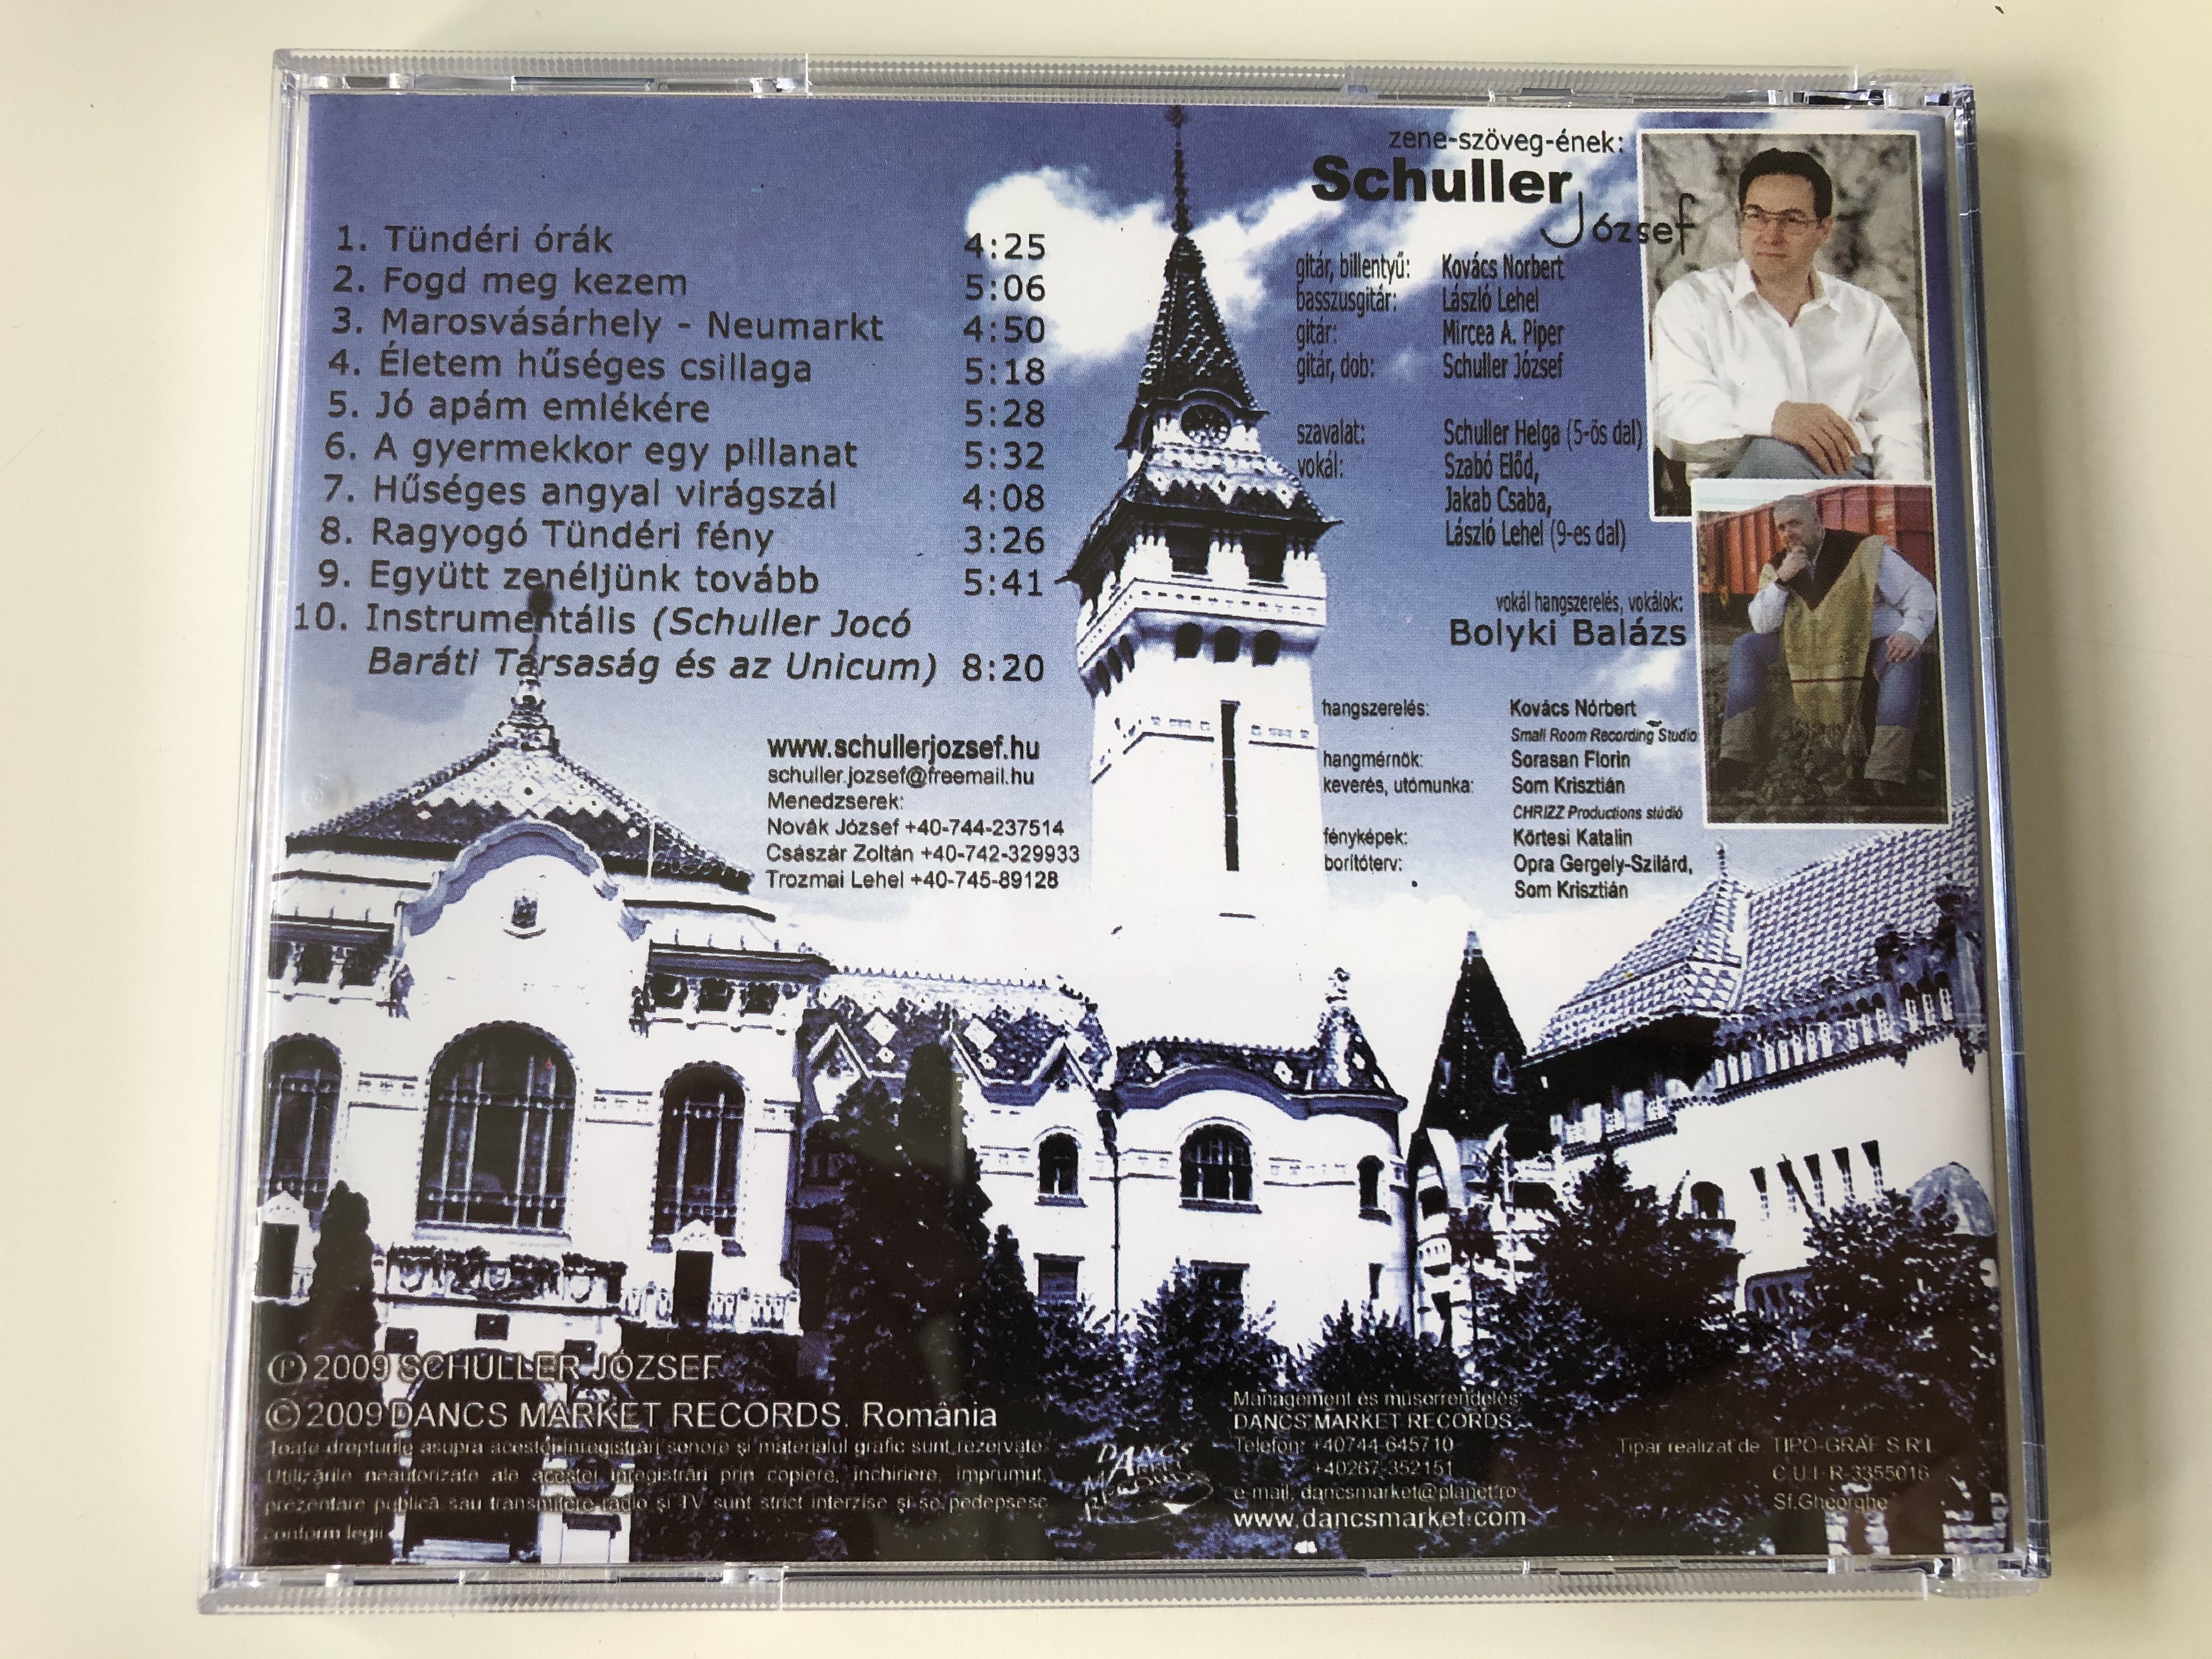 marosvasarhely-egyutt-zeneljunk-tovabb-schuller-jozsef-dancs-market-records-audio-cd-2009-dmr-141-5-.jpg